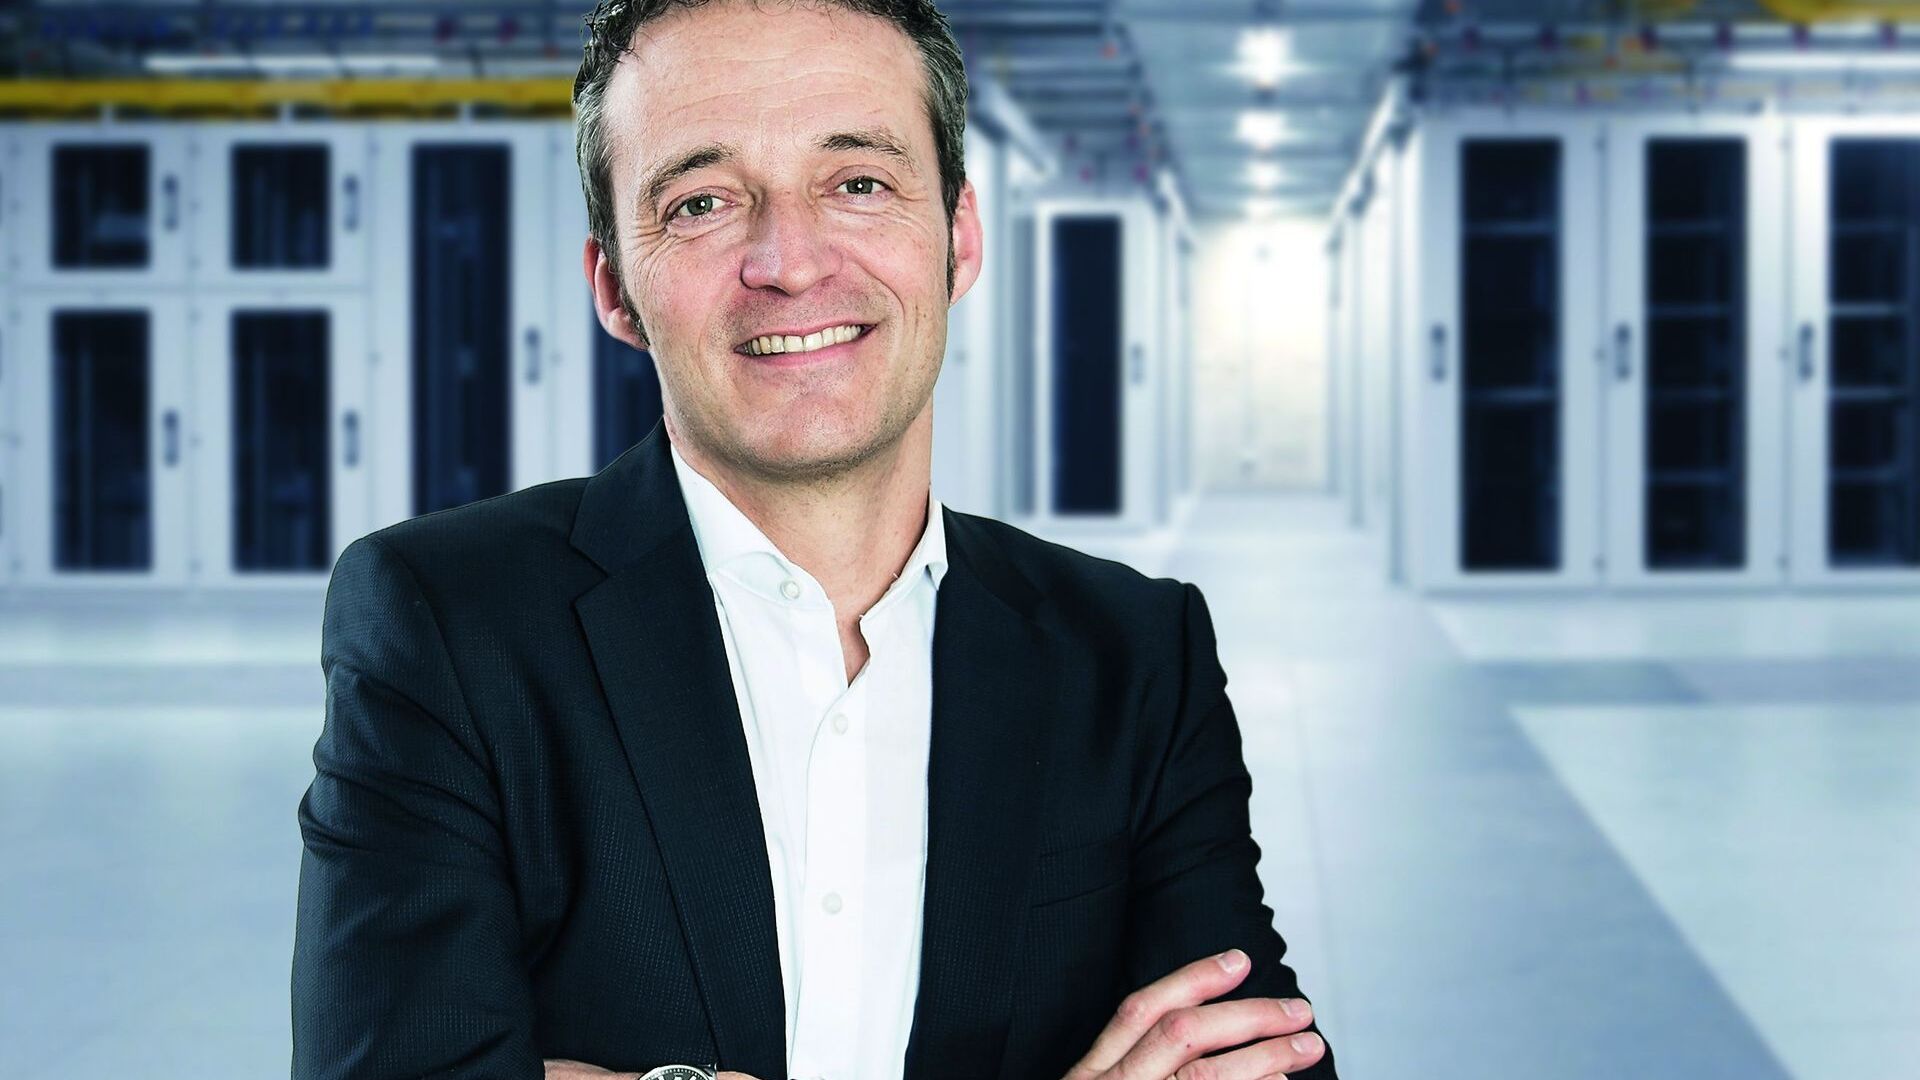 Andreas Schwizer este șeful diviziei TIC și membru al Consiliului de administrație al SAK (St. Gallisch-Appenzellische Kraftwerke AG)